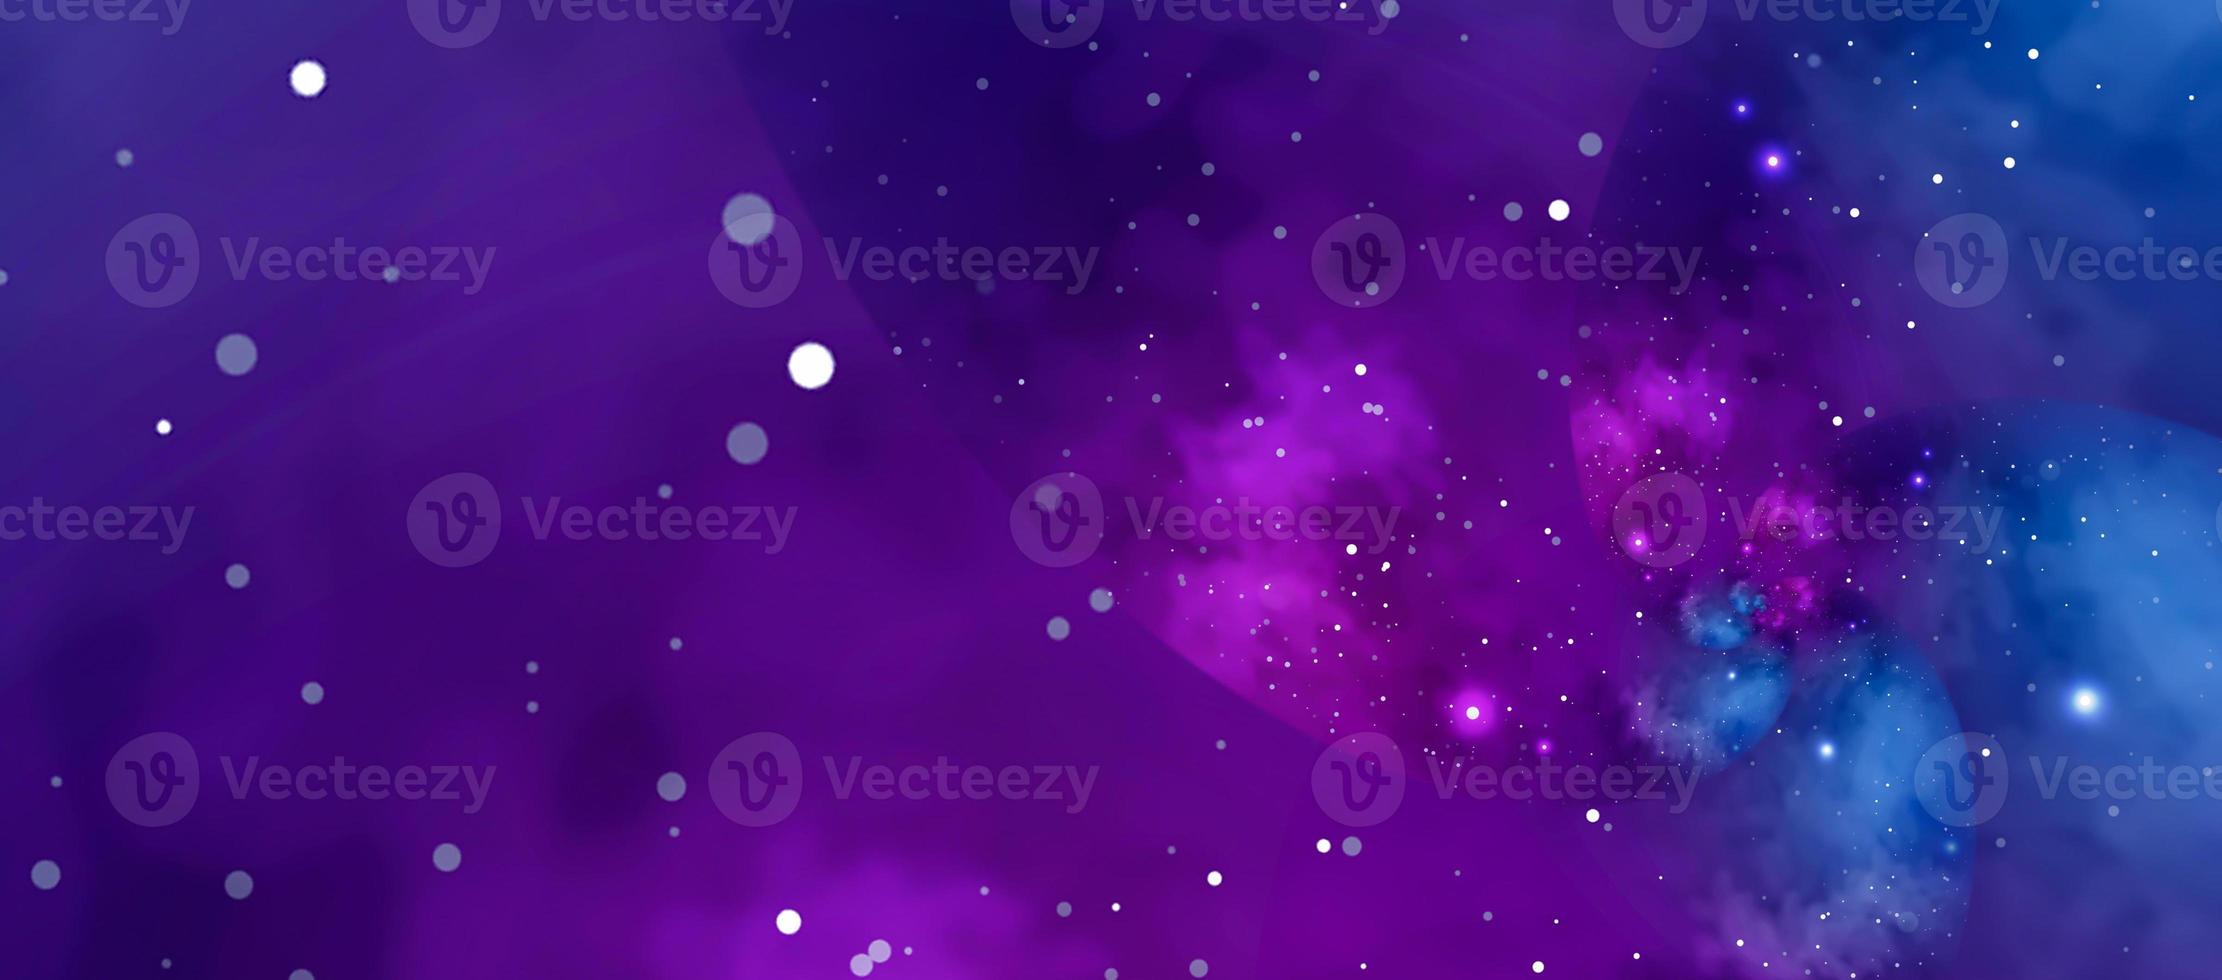 sfondo stellato con nebulosa blu e viola. concetto di spazio, astronomia, galassia, universo, scienza foto